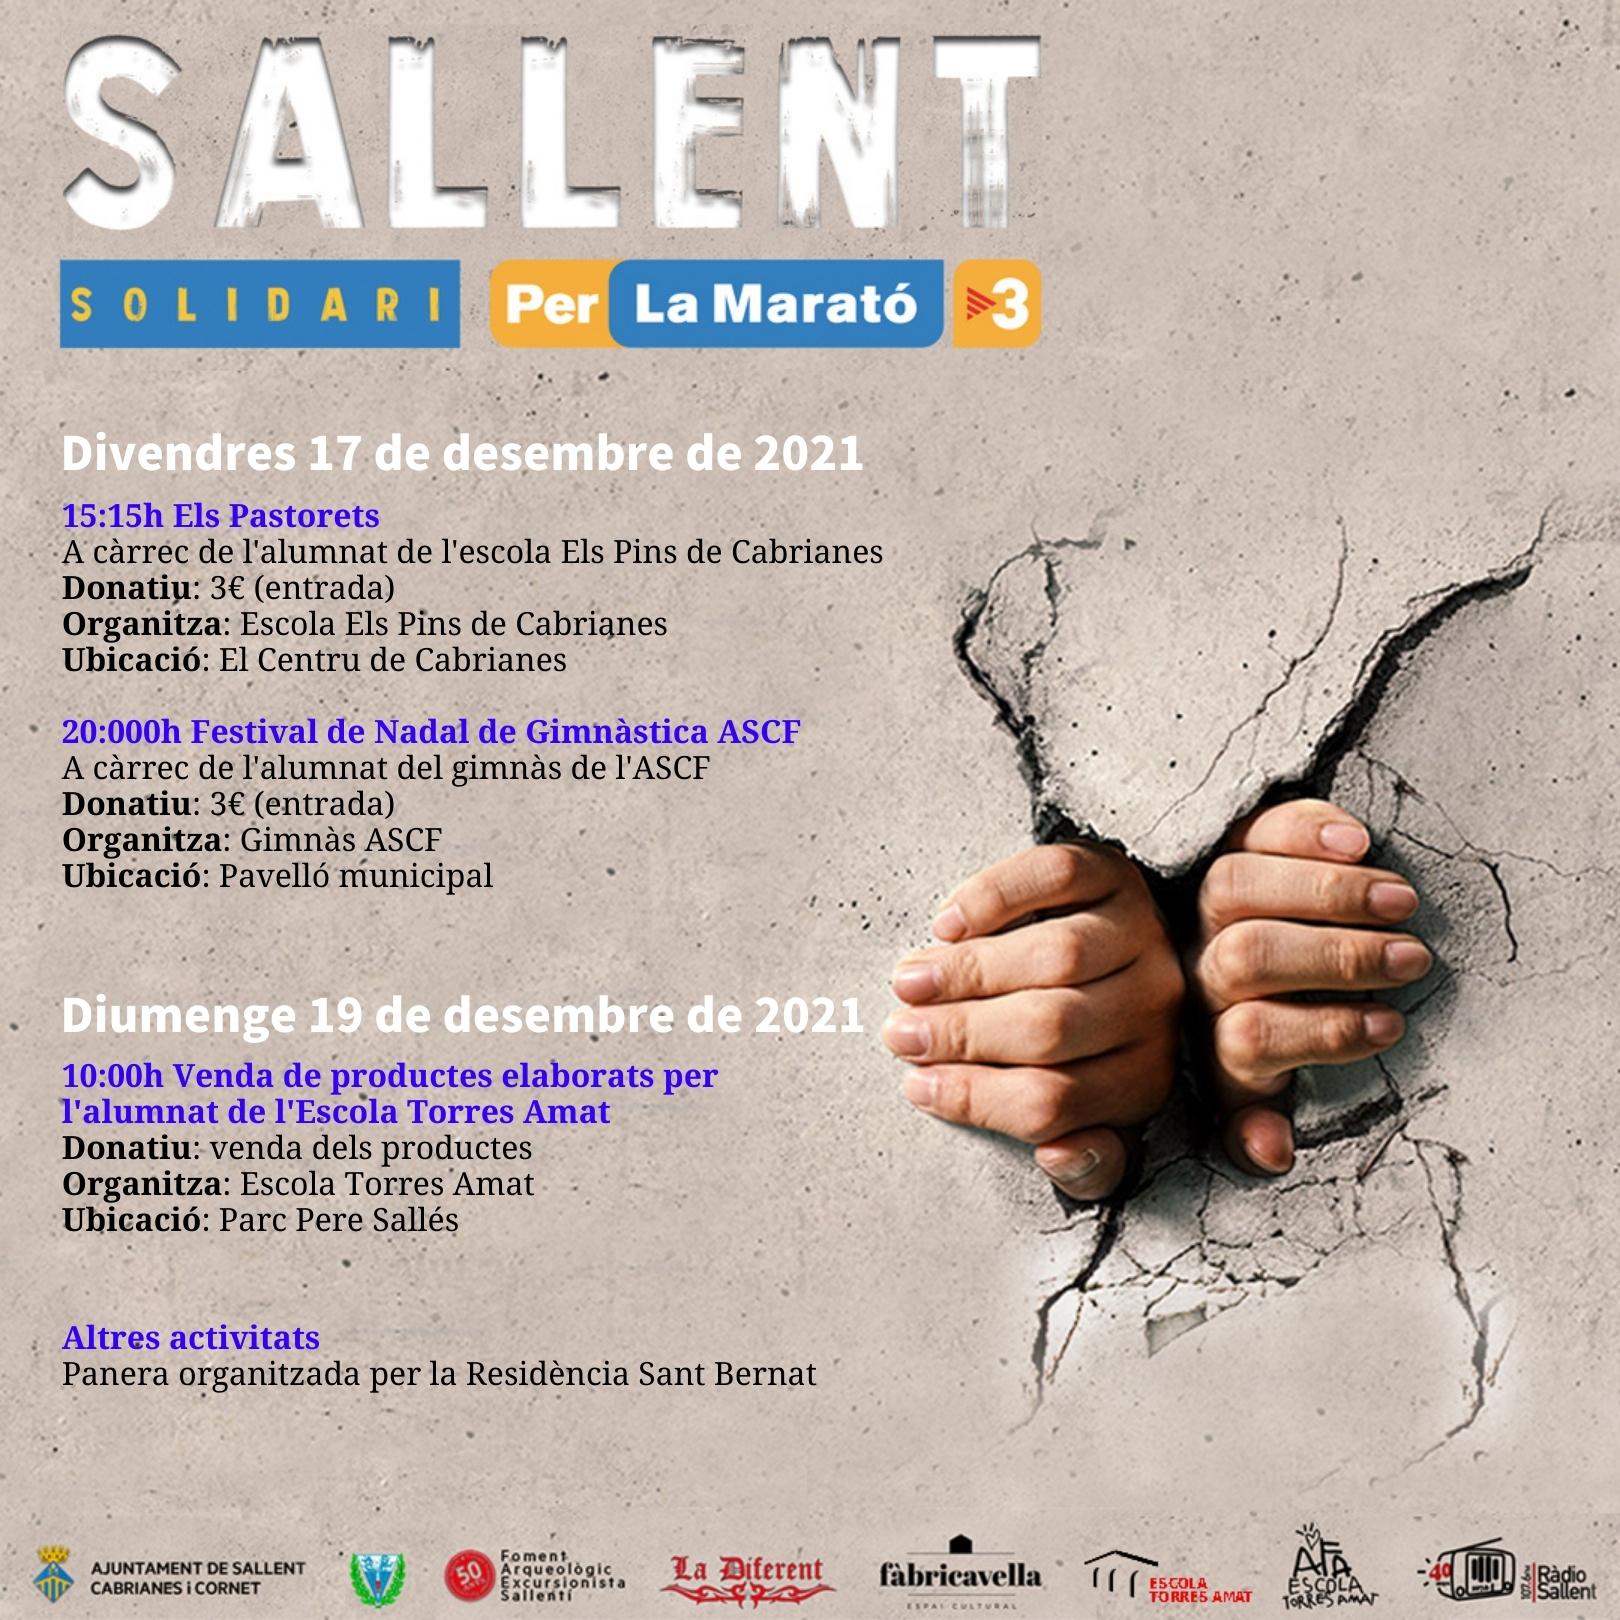 Activitats solidàries a Sallent per a La Marató 2021